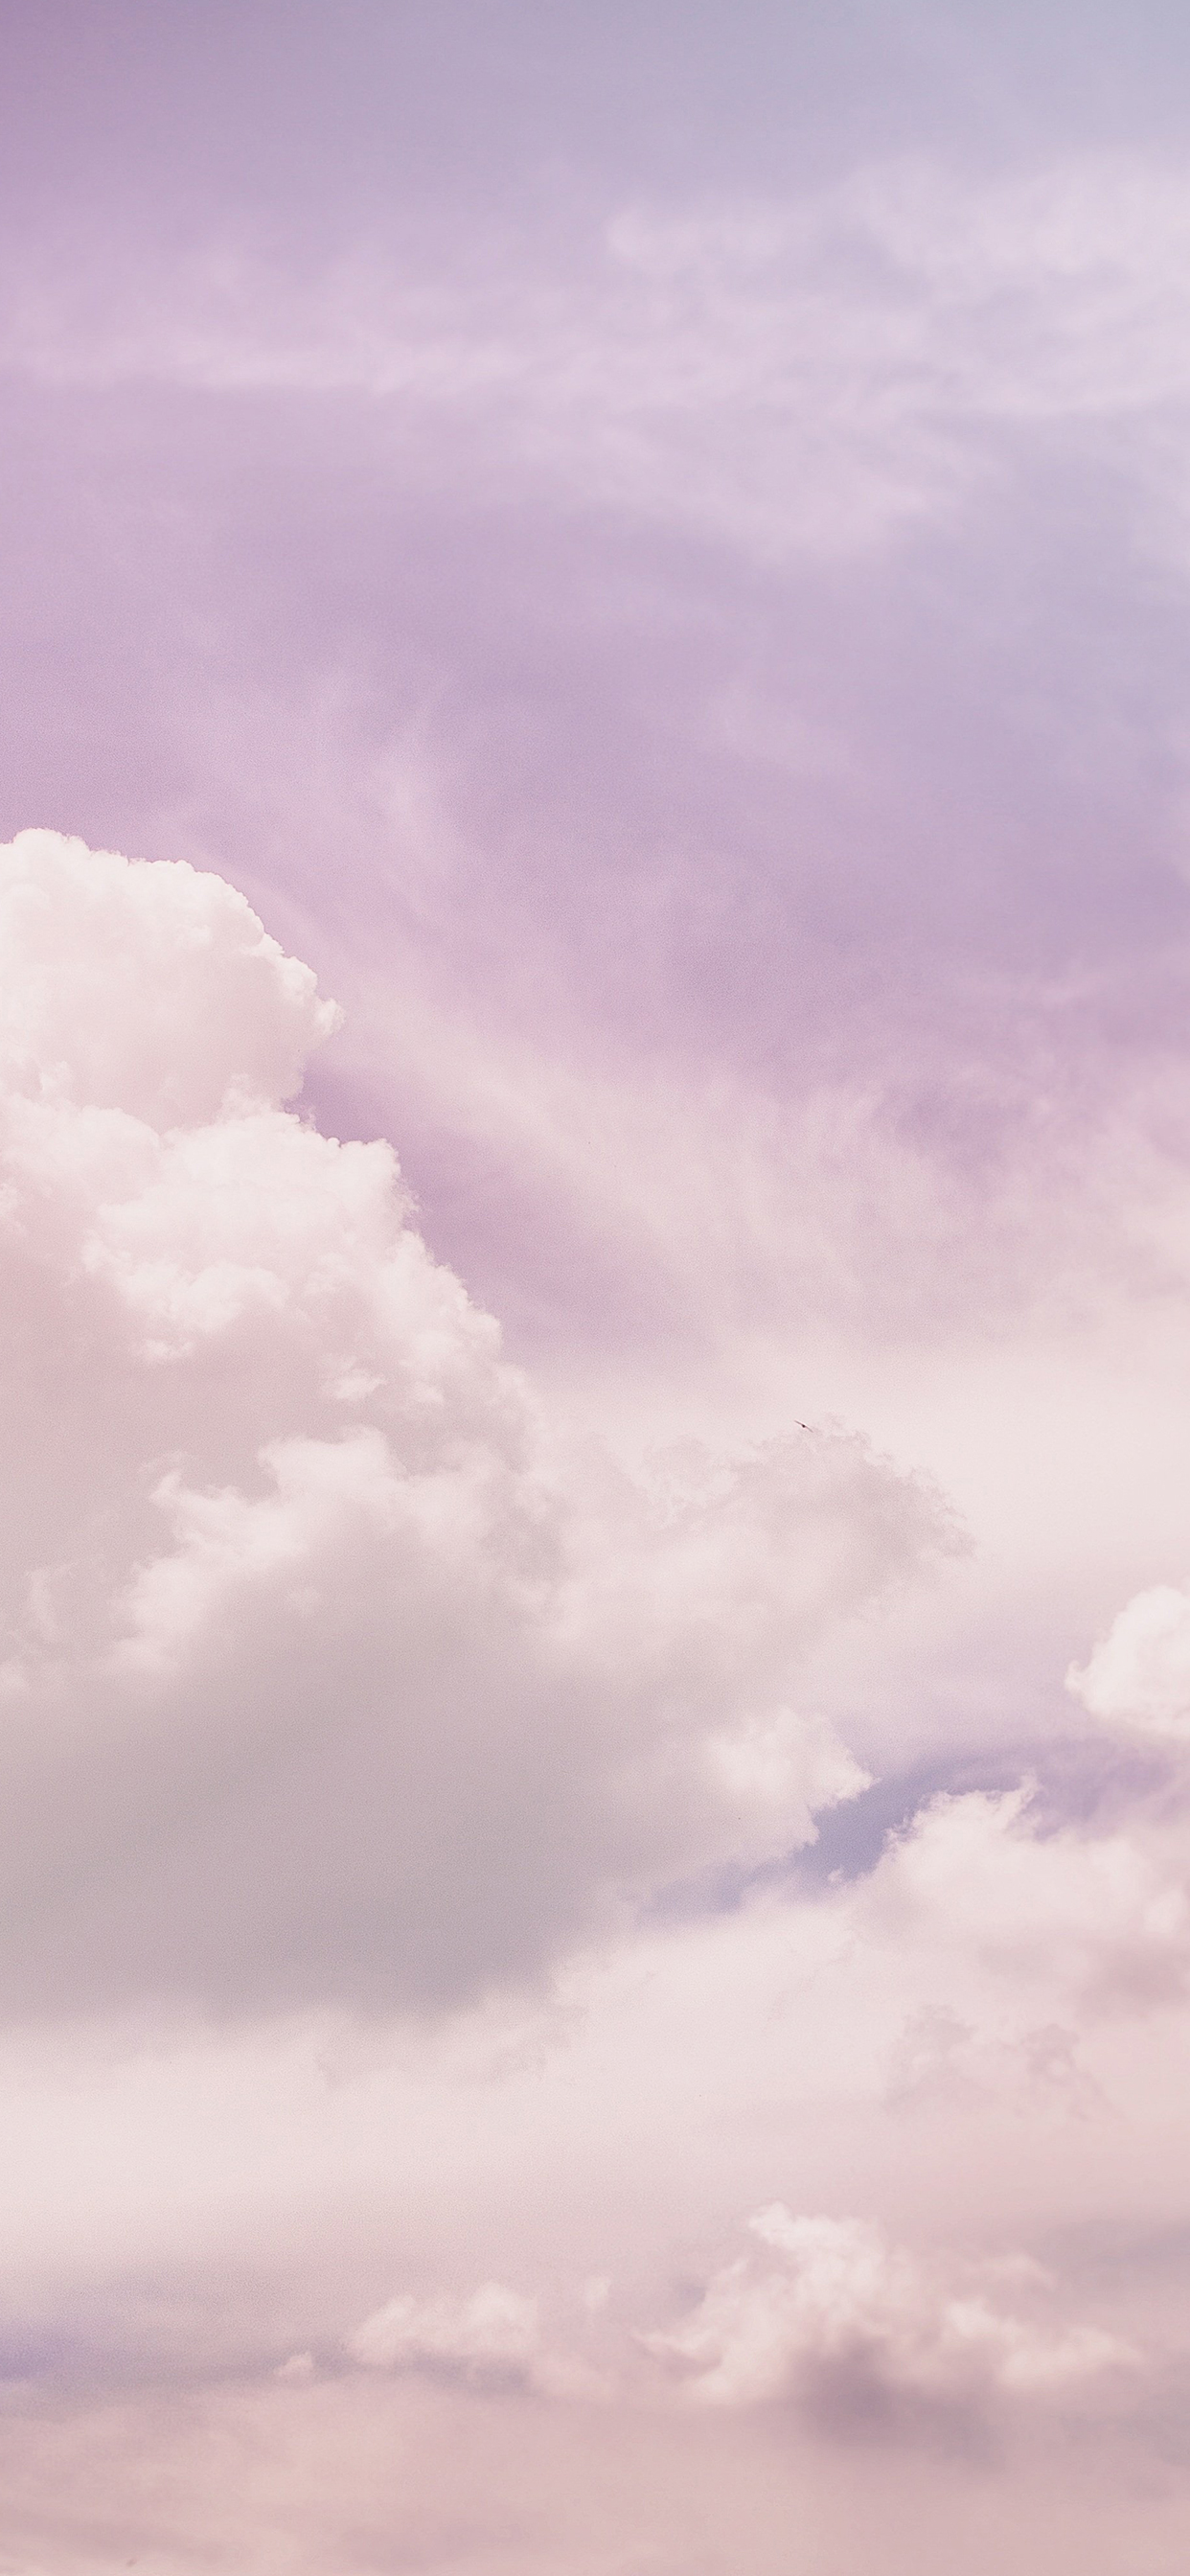 하늘, 구름 심플한 아이폰&갤럭시 배경화면 공유